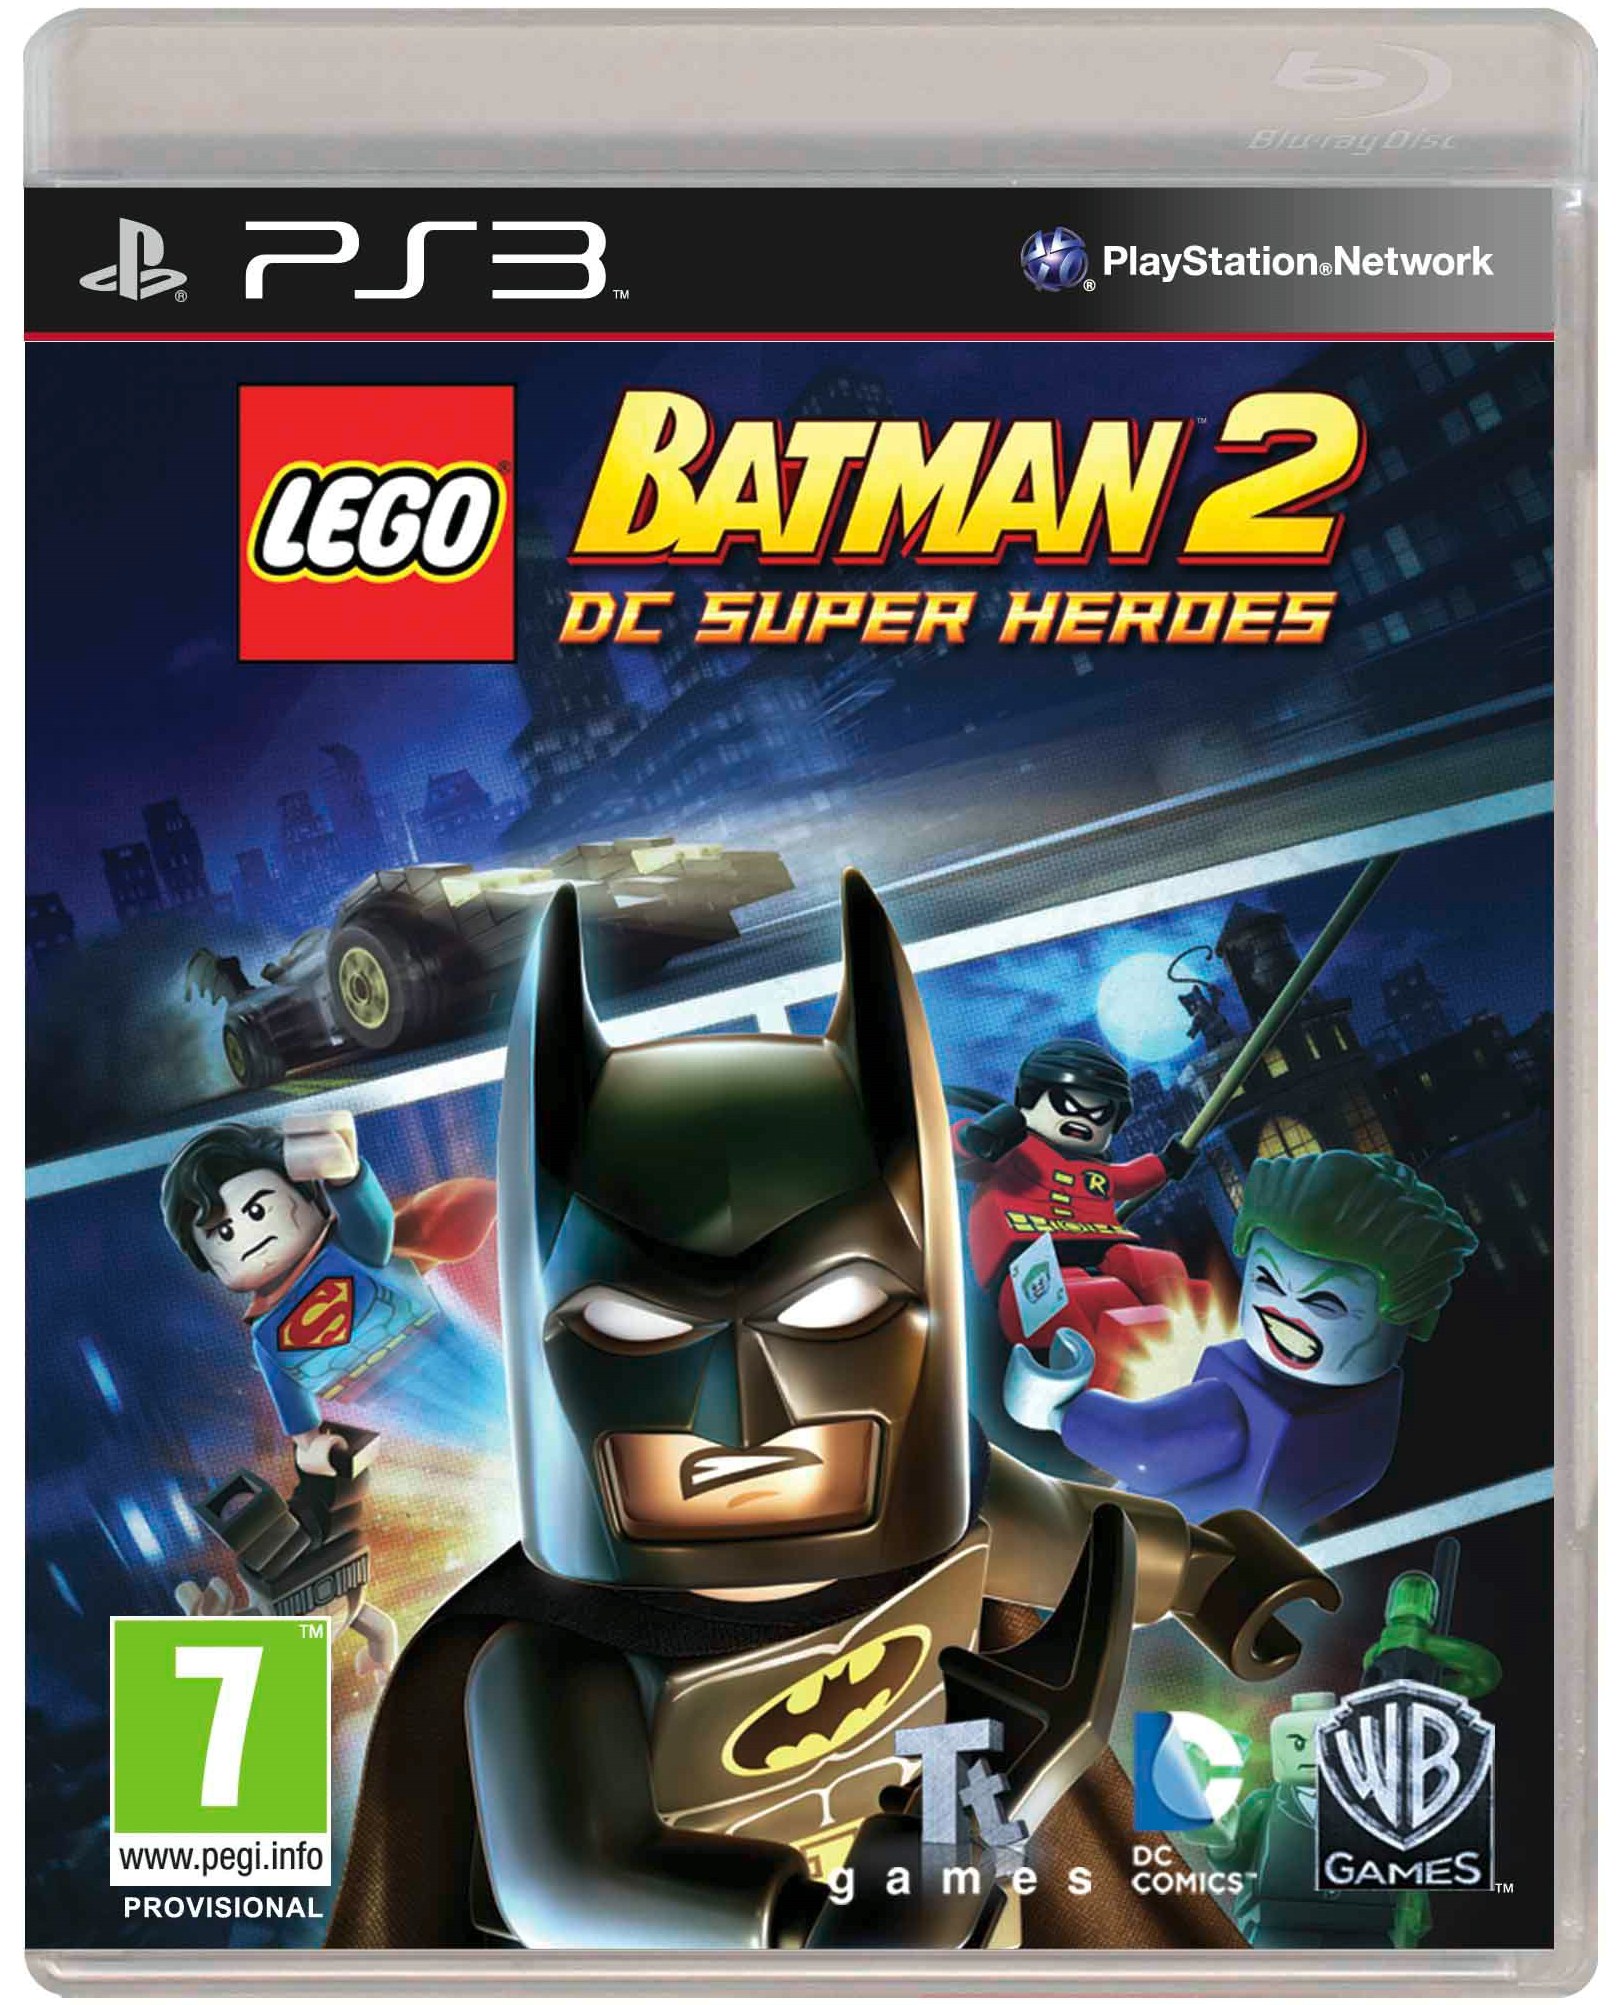 Lego Batman 2 Dc Super Heroes Cheat Codes Ps3